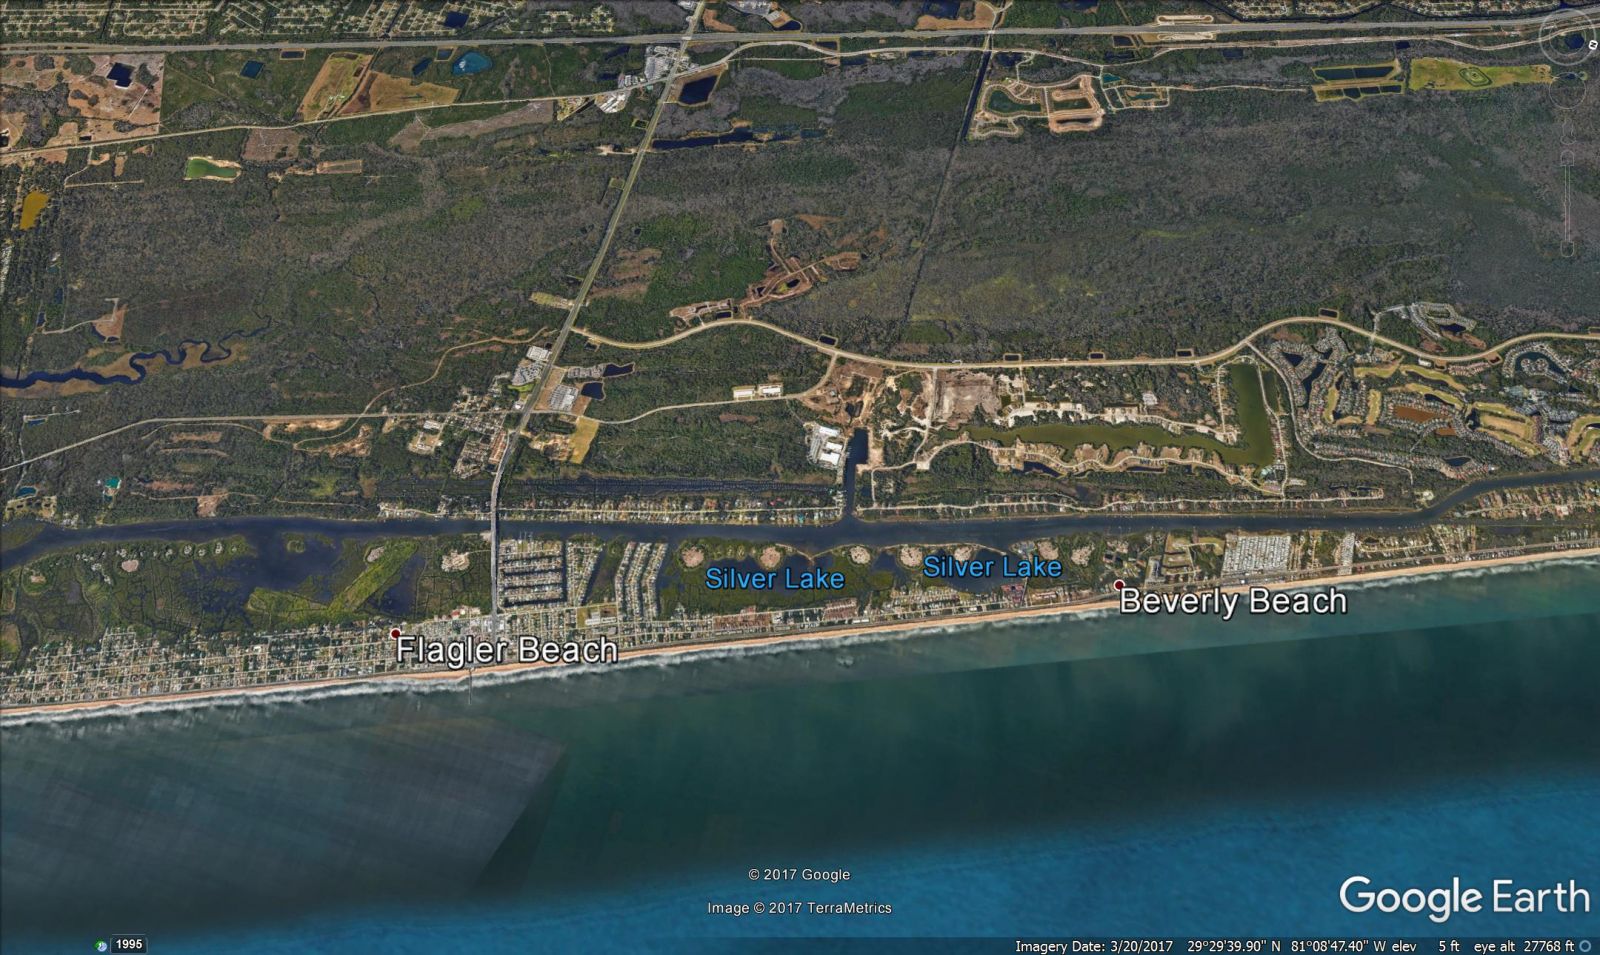 Beverly Beach and Flagler Beach - Google Earth